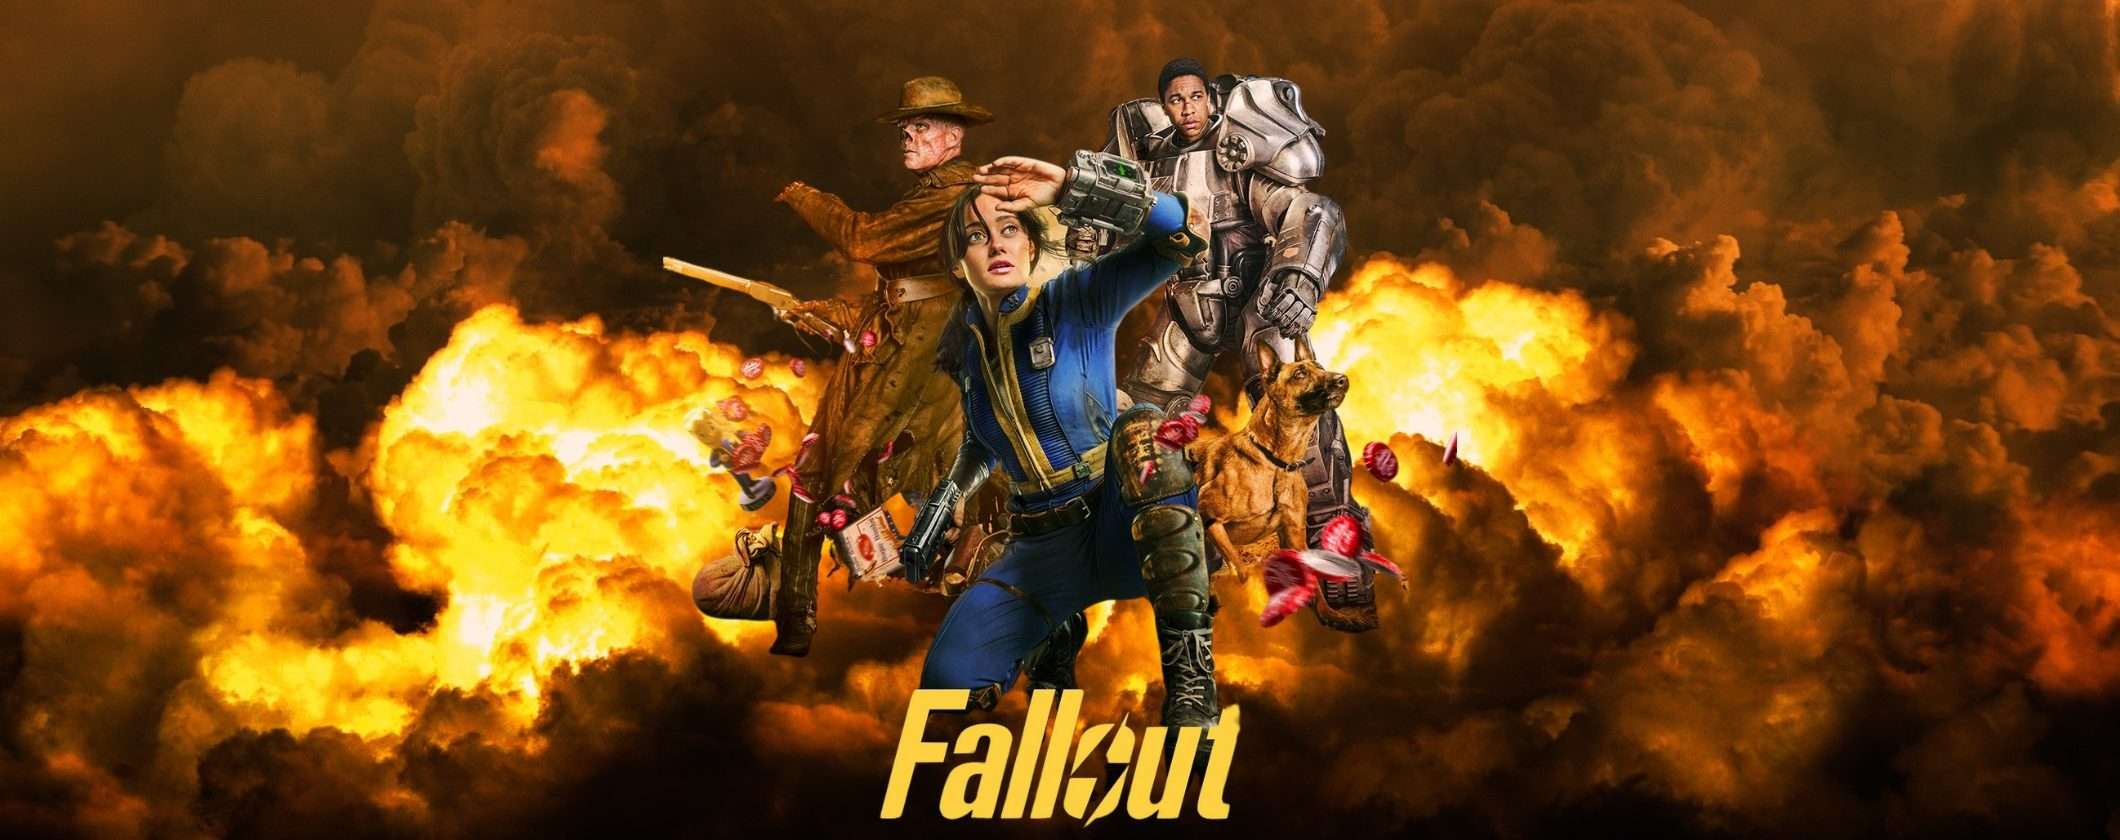 Come vedere Fallout GRATIS su Prime Video